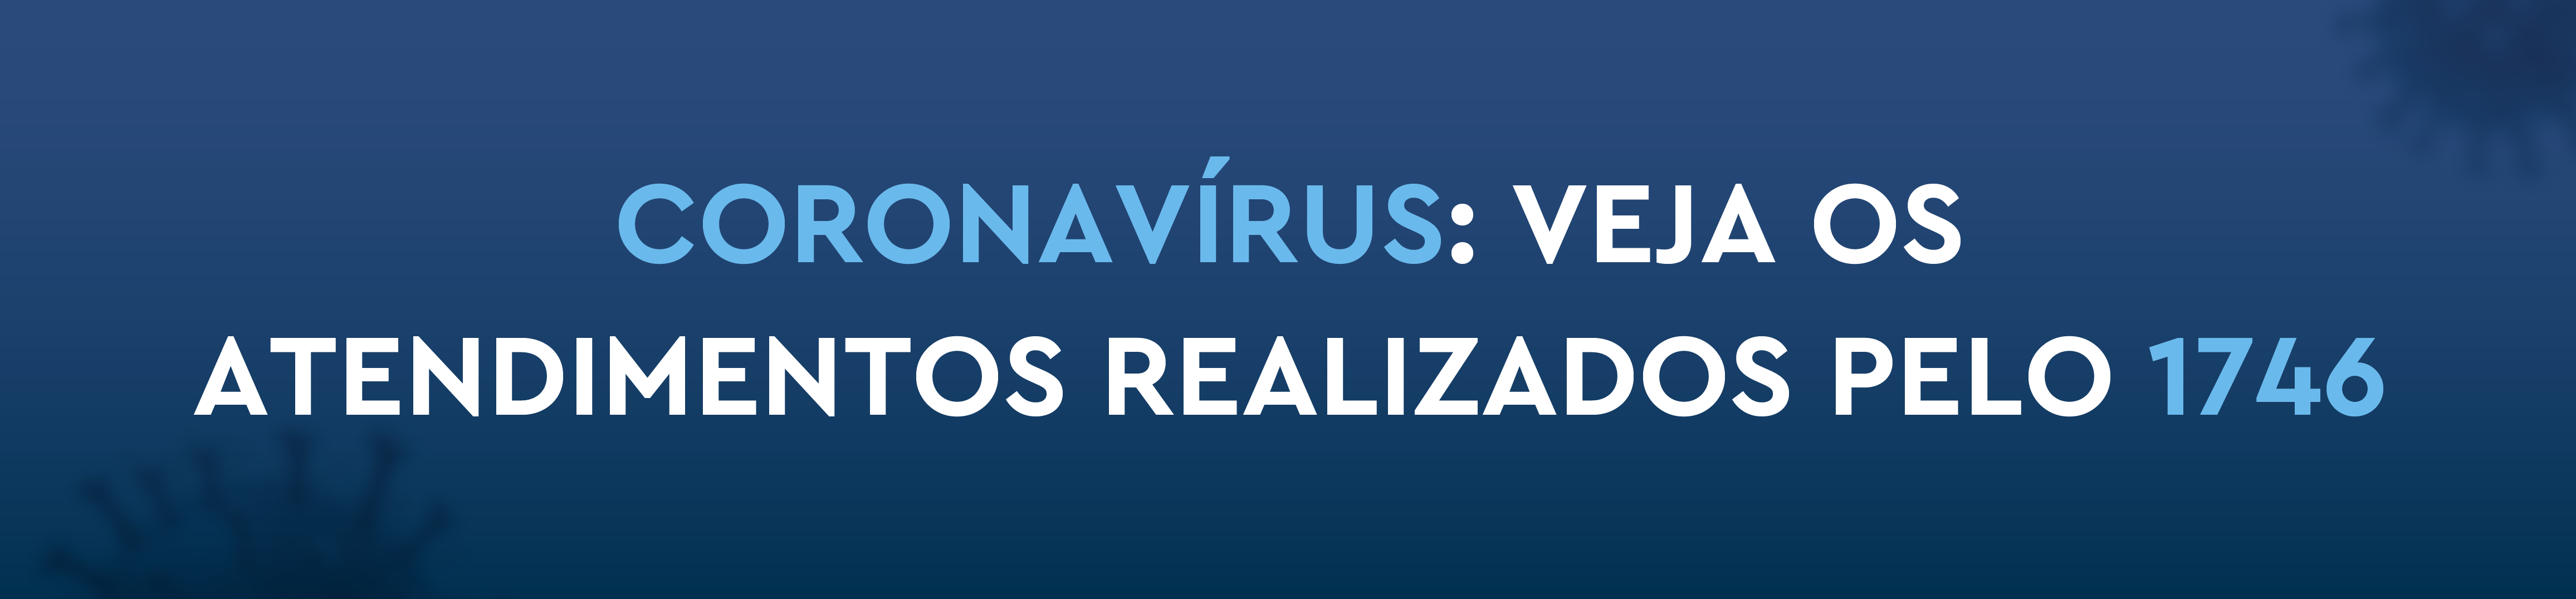 Coronavírus: veja os atendimentos realizados pelo 1746.